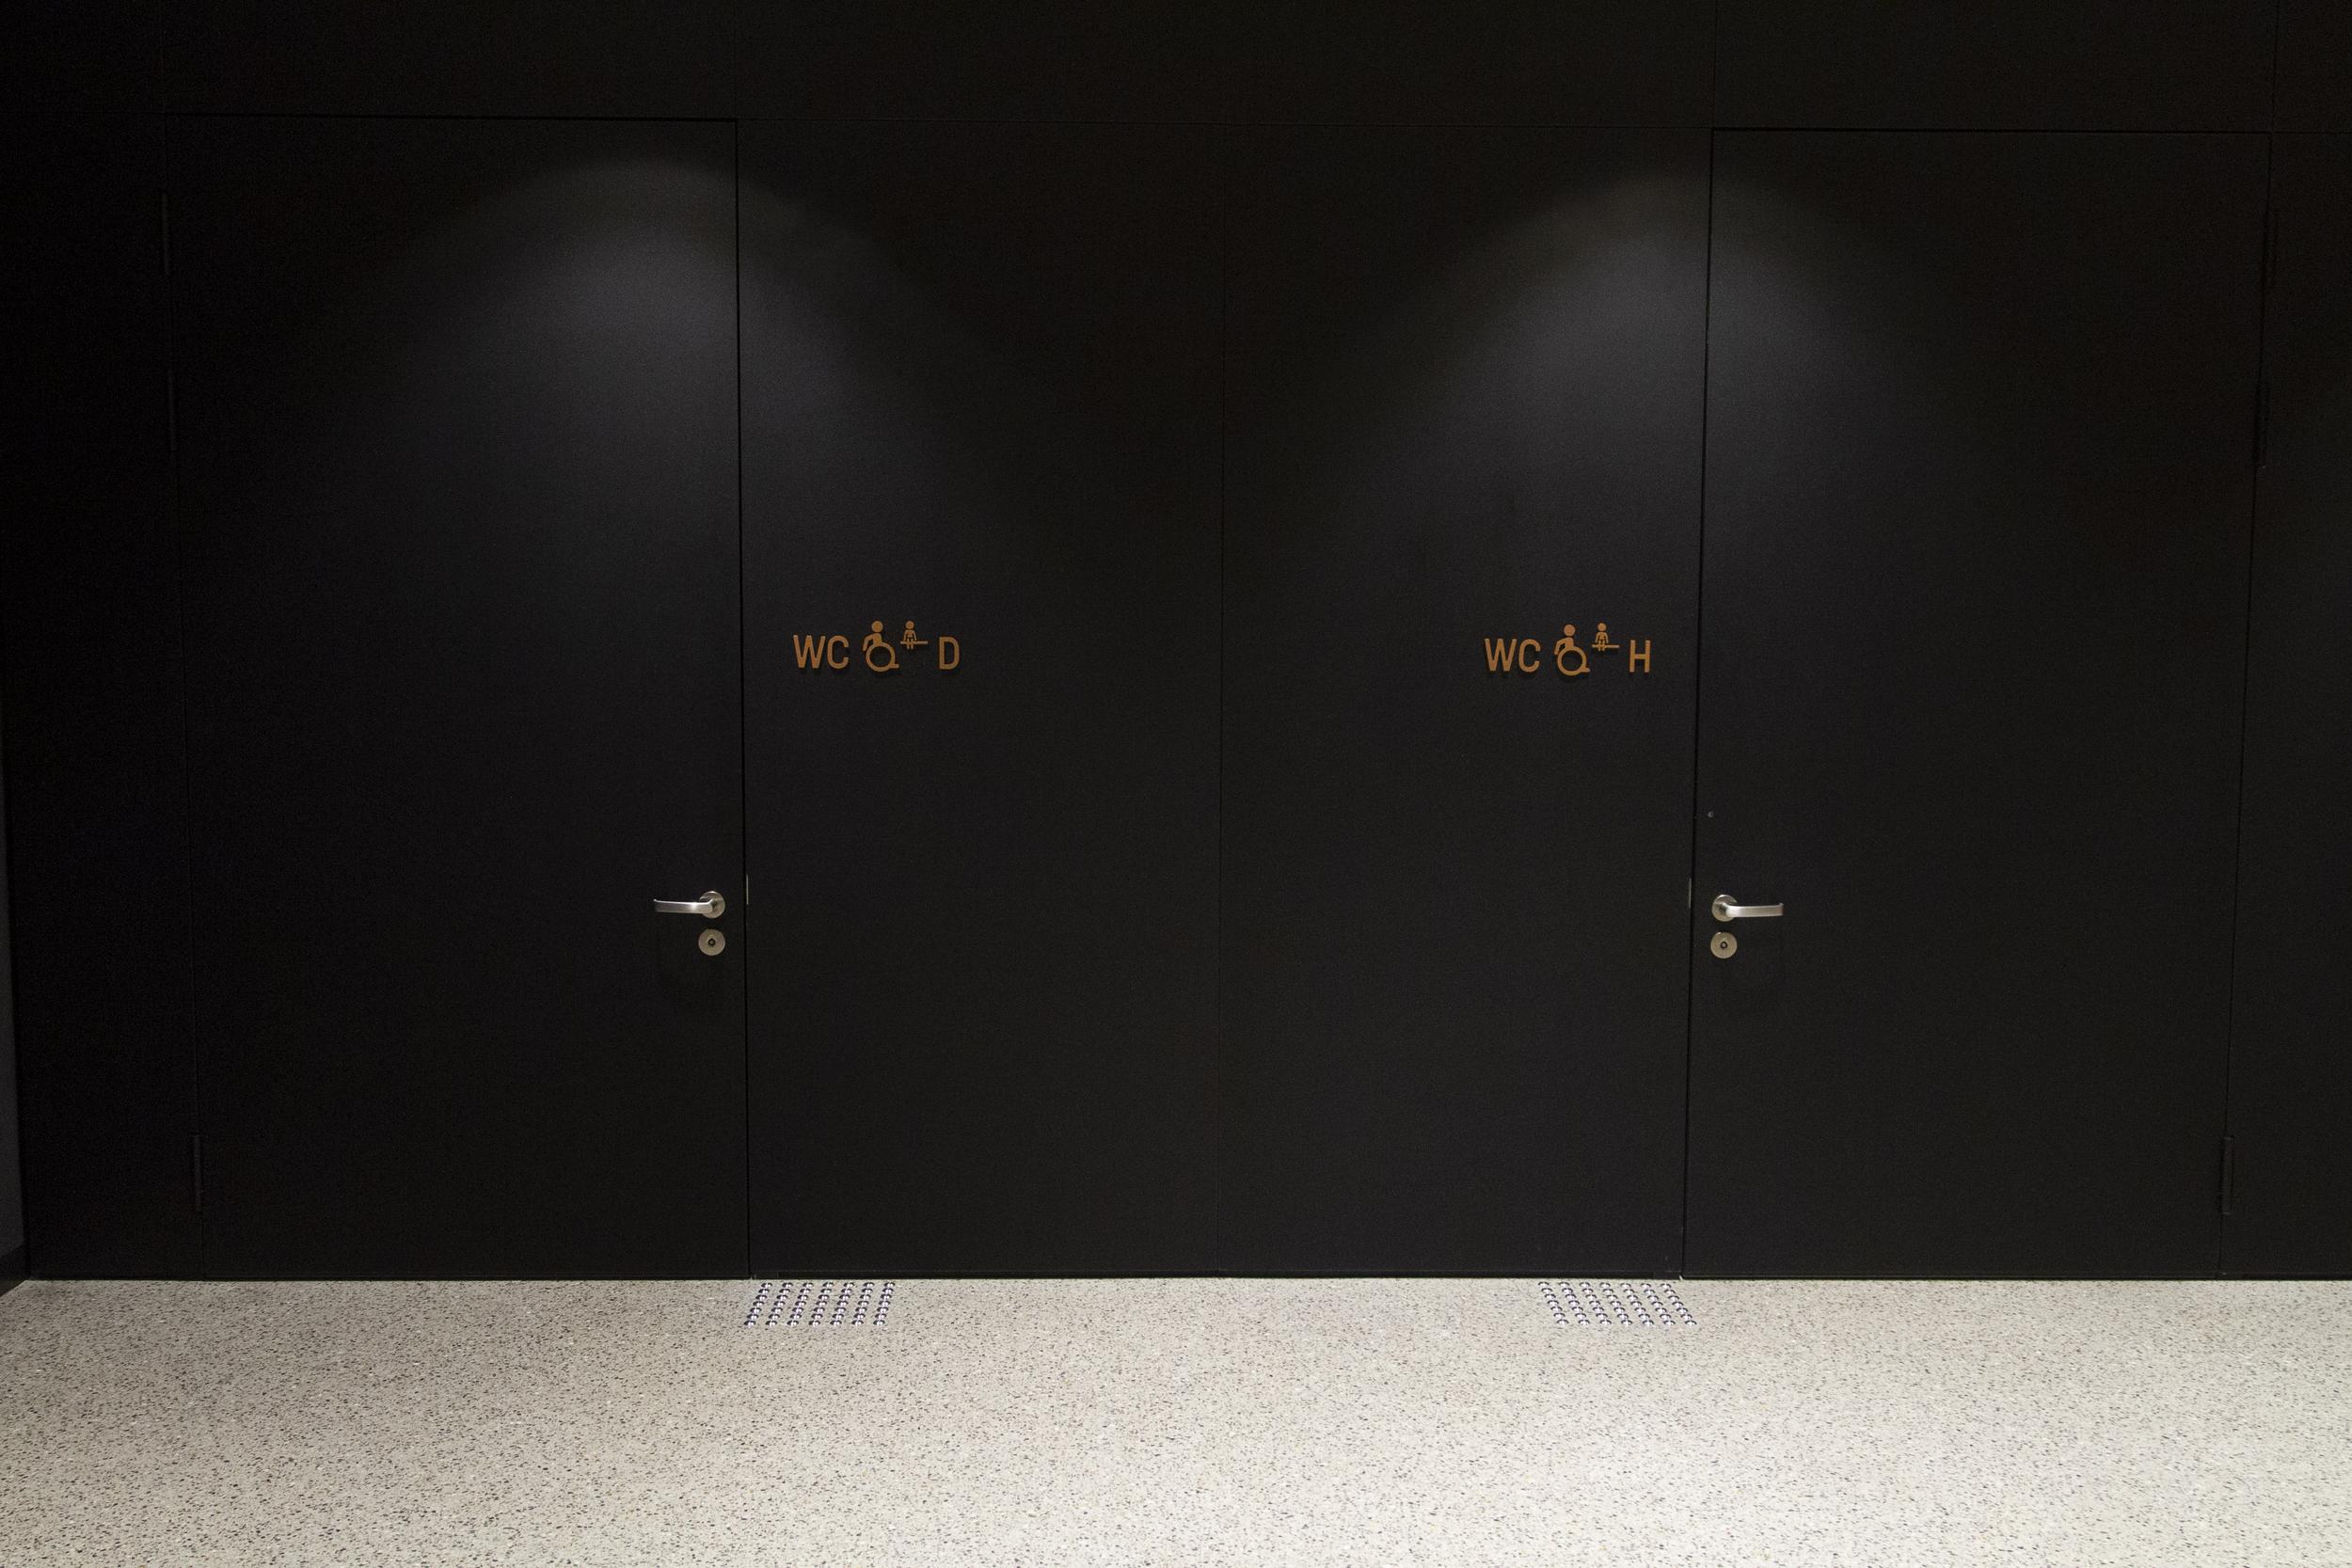 Im Hintergrund 2 Türen zu zwei rollstuhlgerechten Toiletten, links für Damen, rechts für Herren, mit jeweils einem Aufmerksamkeitsfeld (auf dem Boden) neben den Türen.  Die Türgriffhöhe ist barrierefrei.